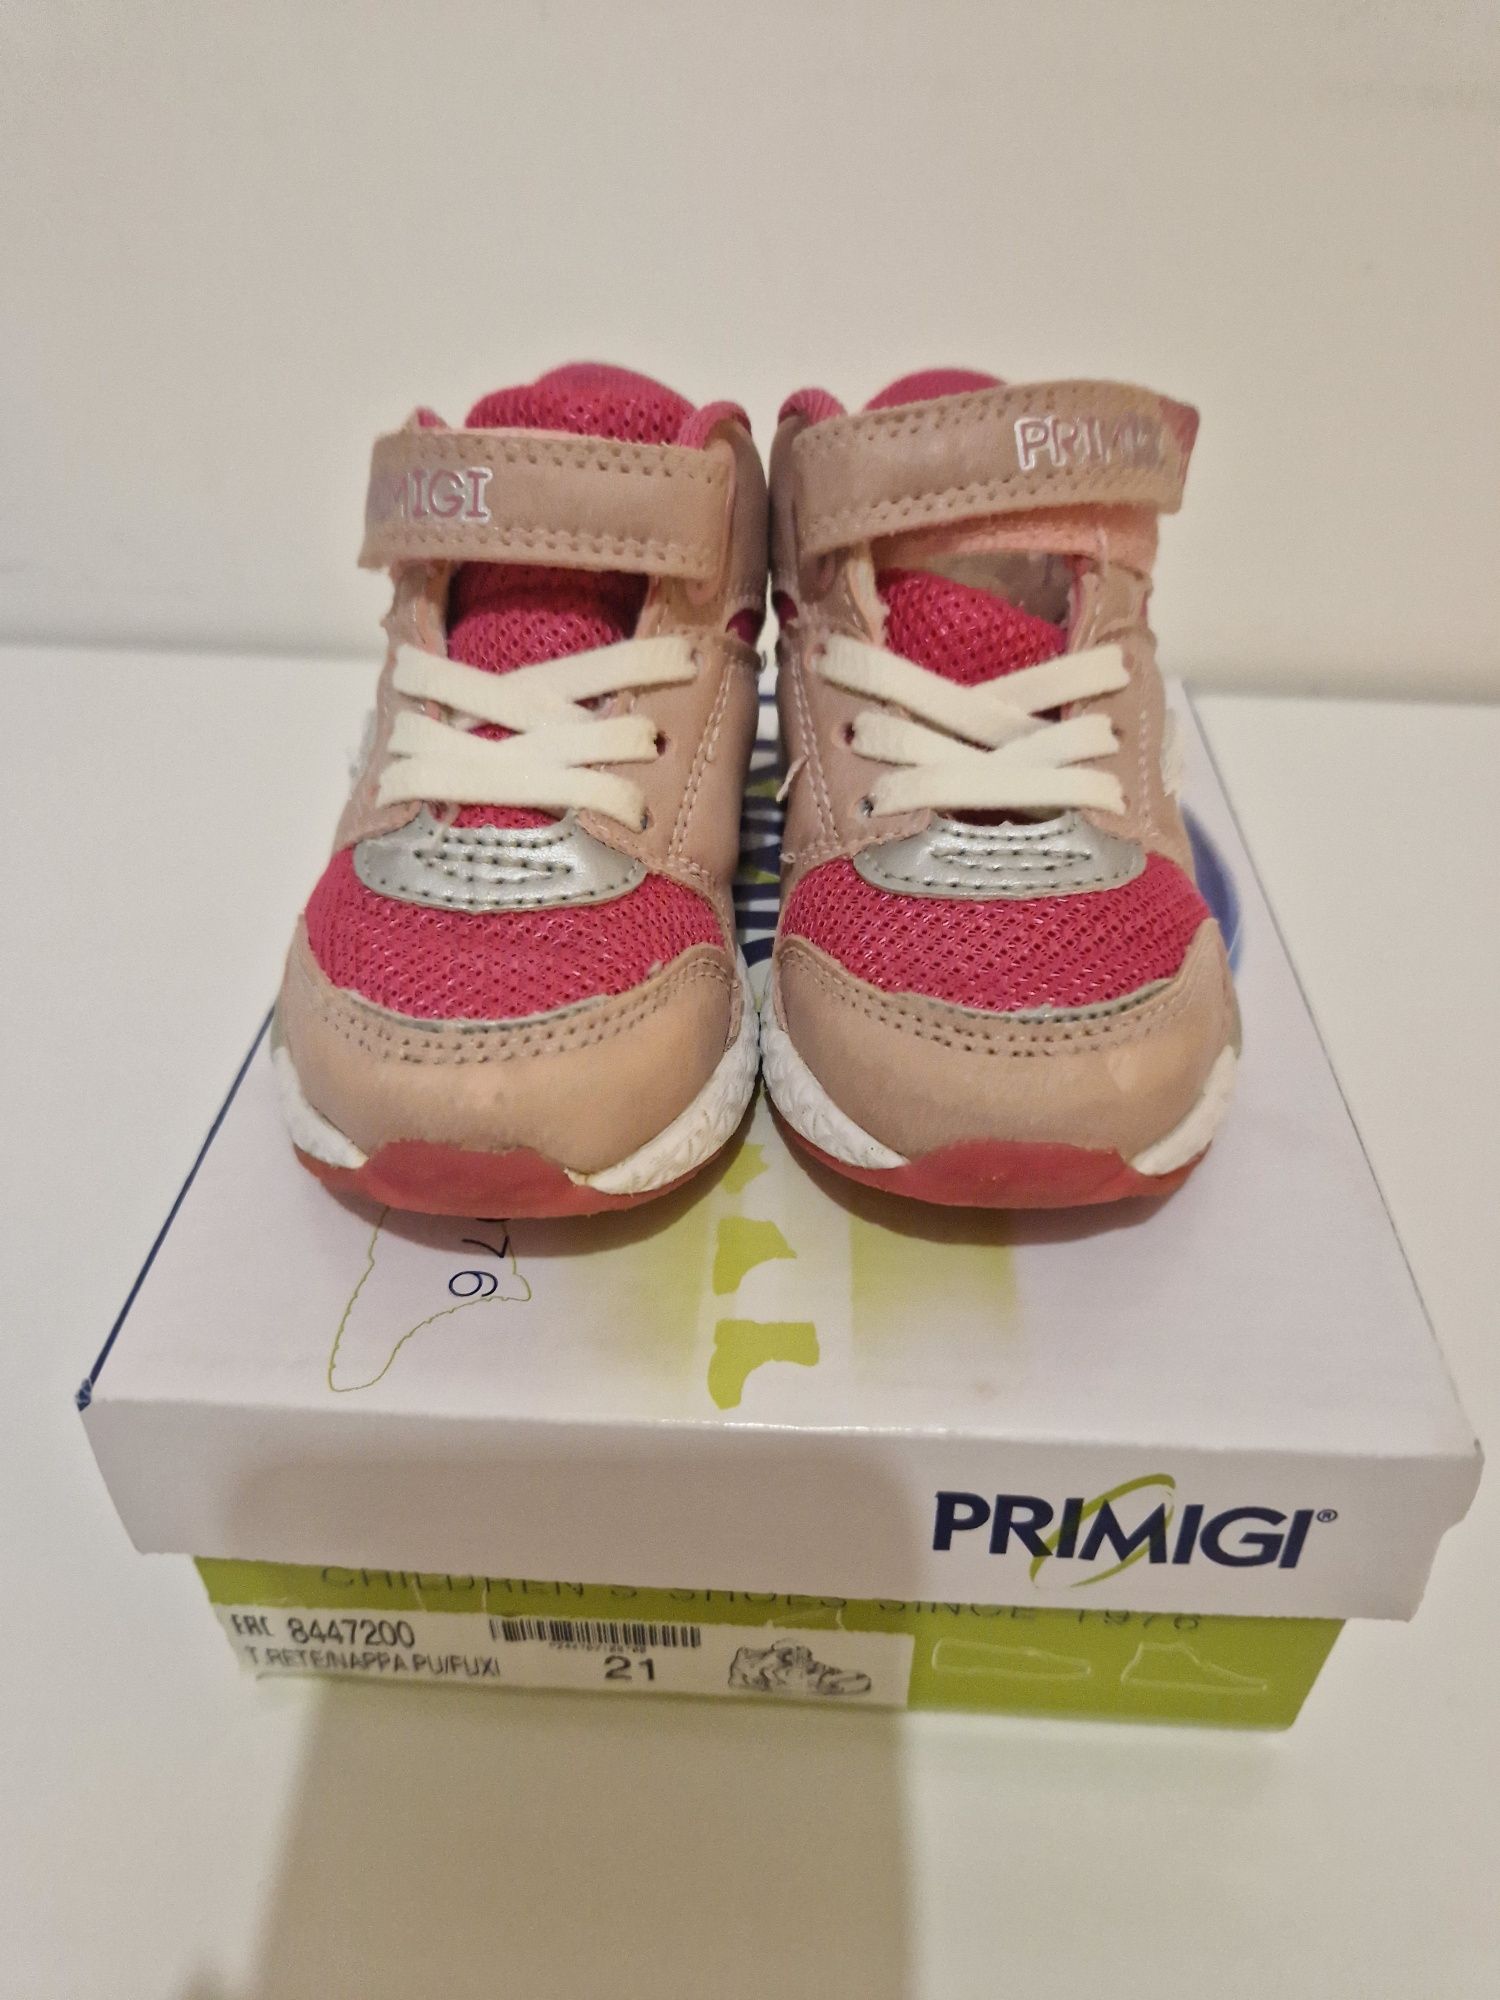 Детски обувки Geox, Primigi, D.D Step, Crocs No.21-25